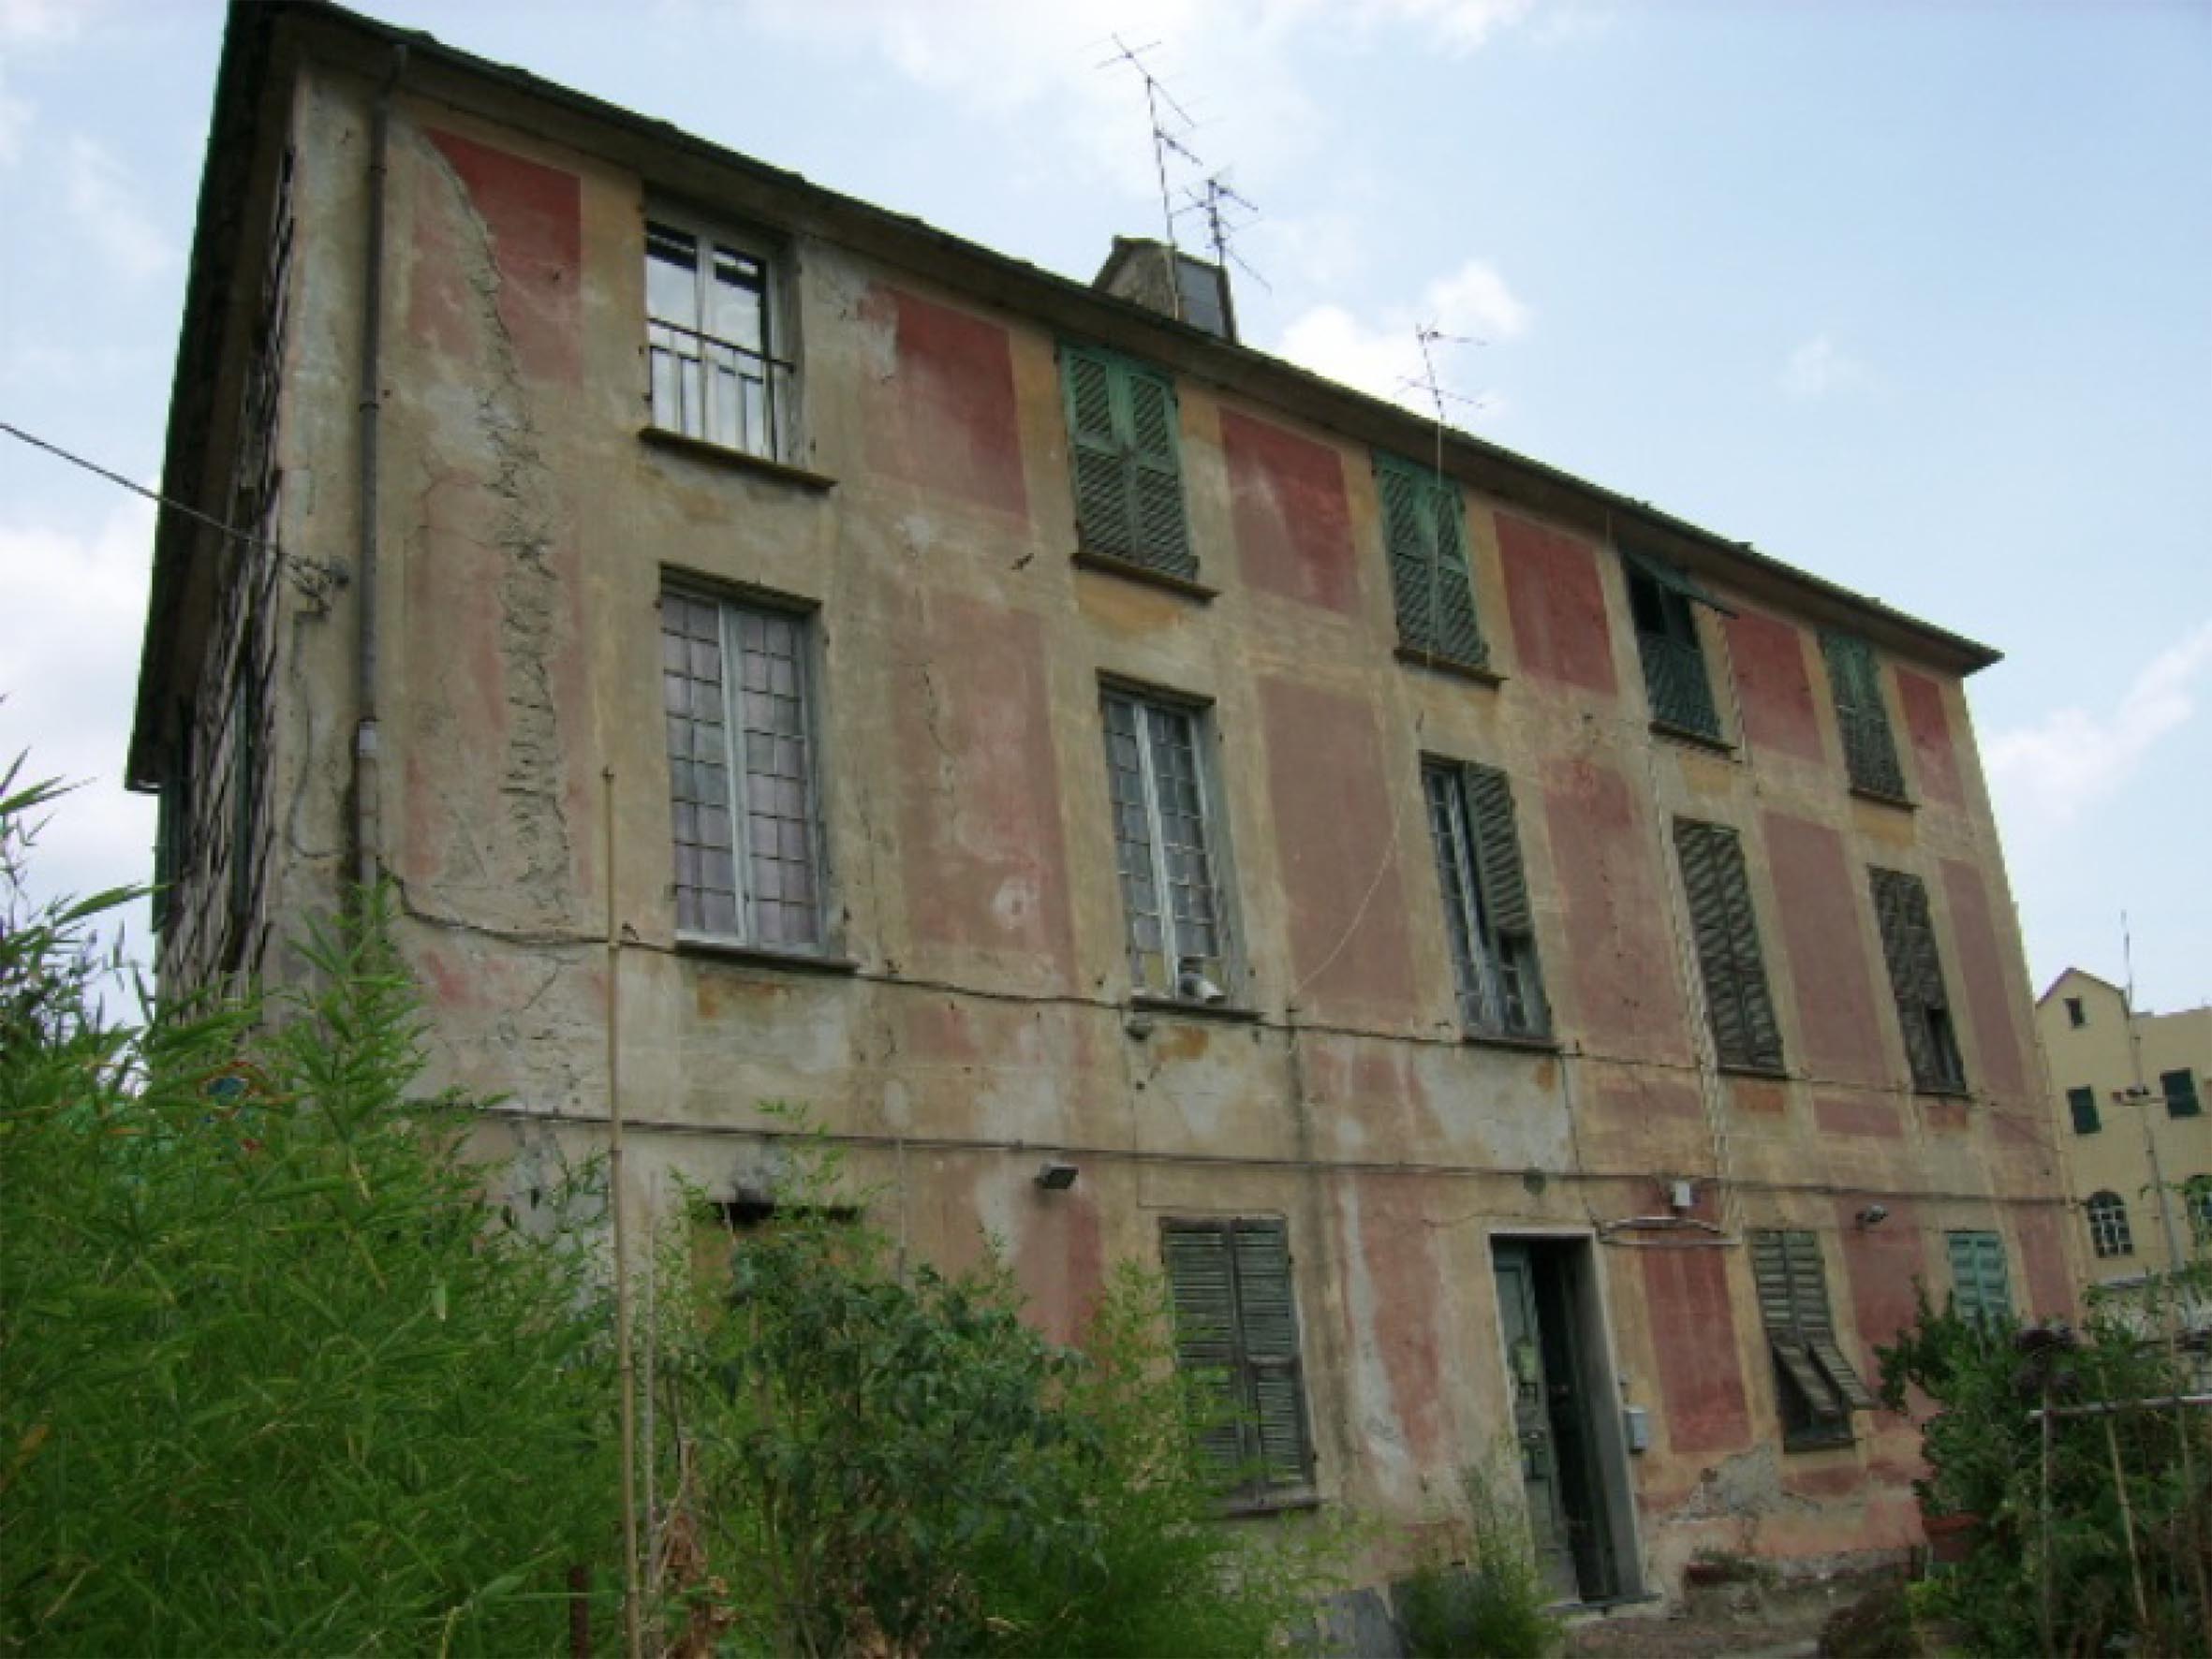 Villa Ricci (villa, padronale) - Savona (SV)  (XVIII, prima metà)